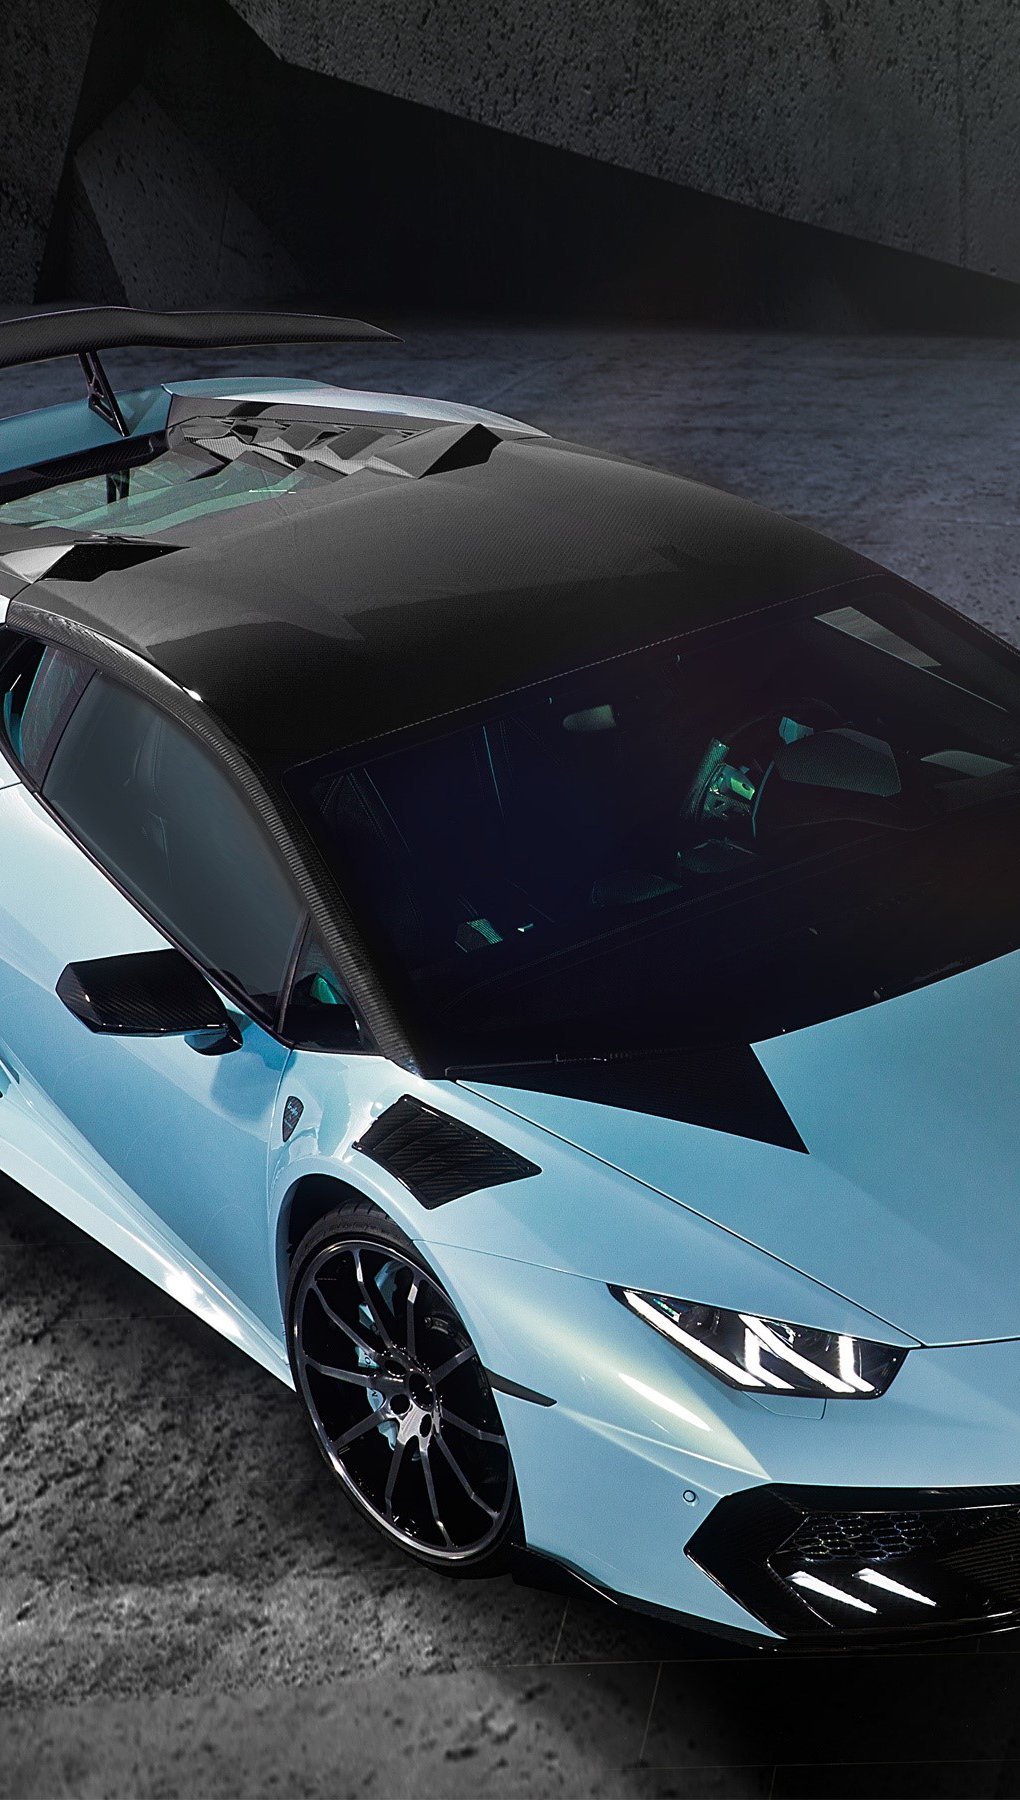 Fondos de pantalla Mansory Lamborghini Huracan Vertical